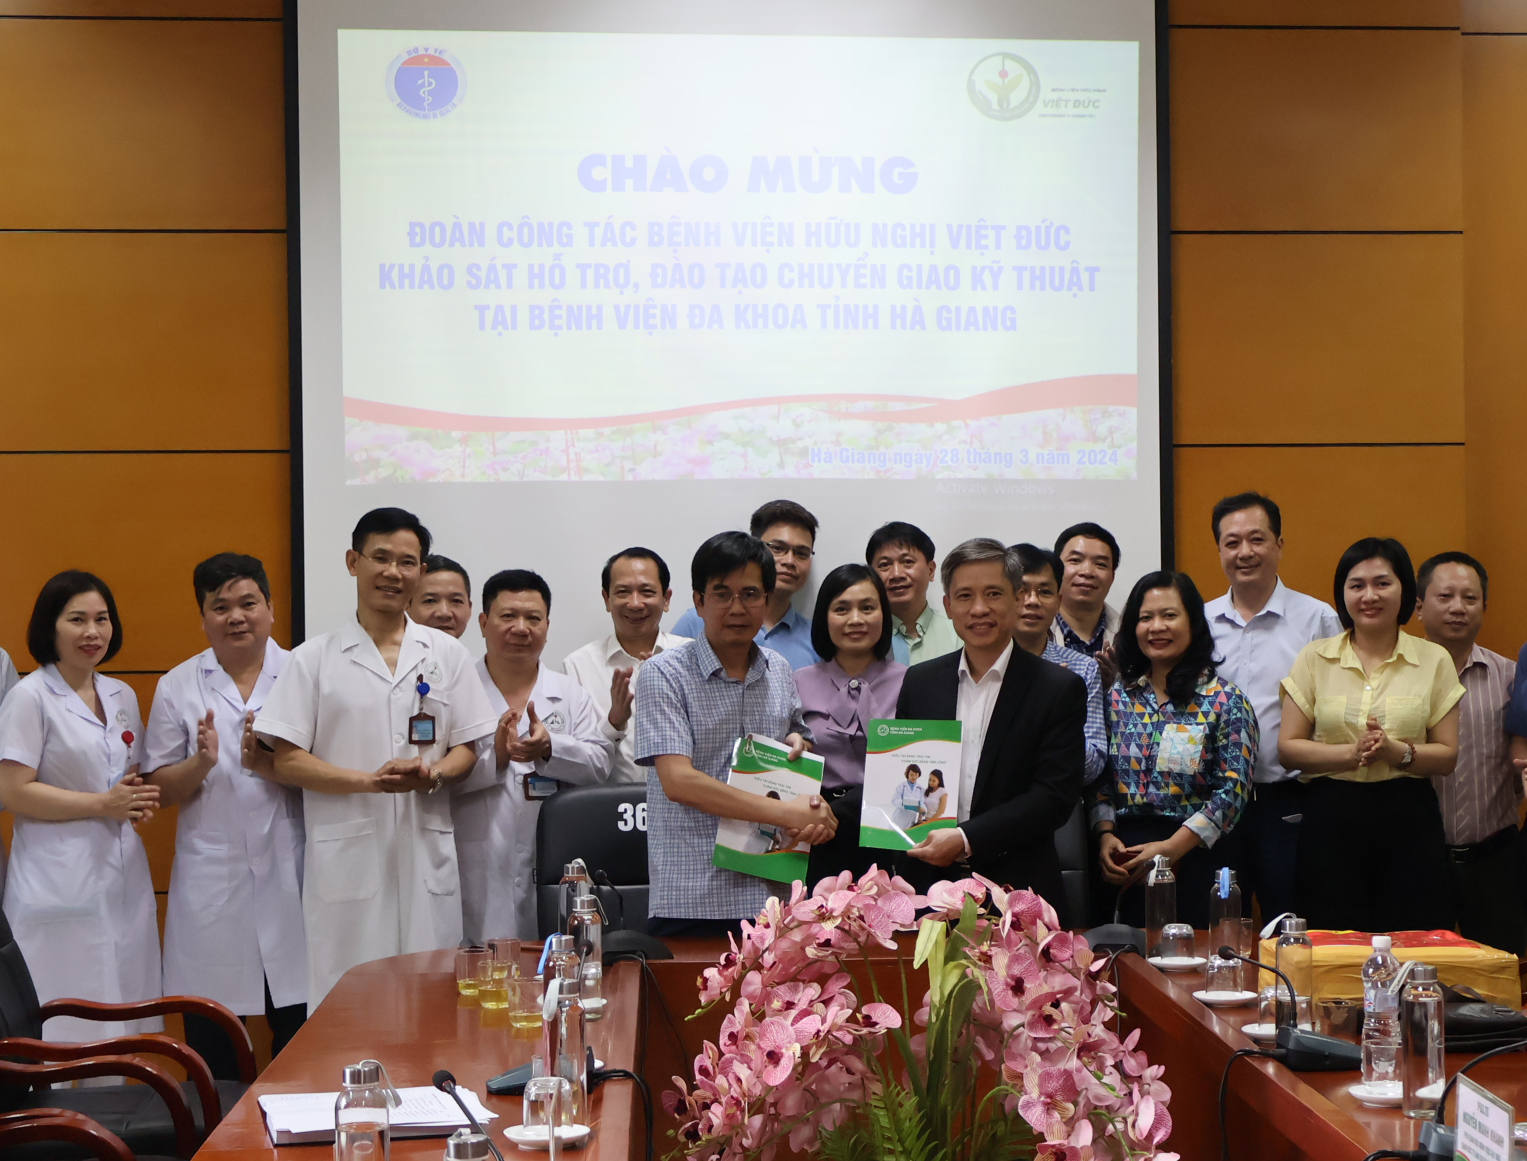 Đoàn công tác Bệnh viện Hữu nghị Việt Đức khảo sát hỗ trợ, đào tạo  chuyển giao kỹ thuật tại Bệnh viện đa khoa tỉnh